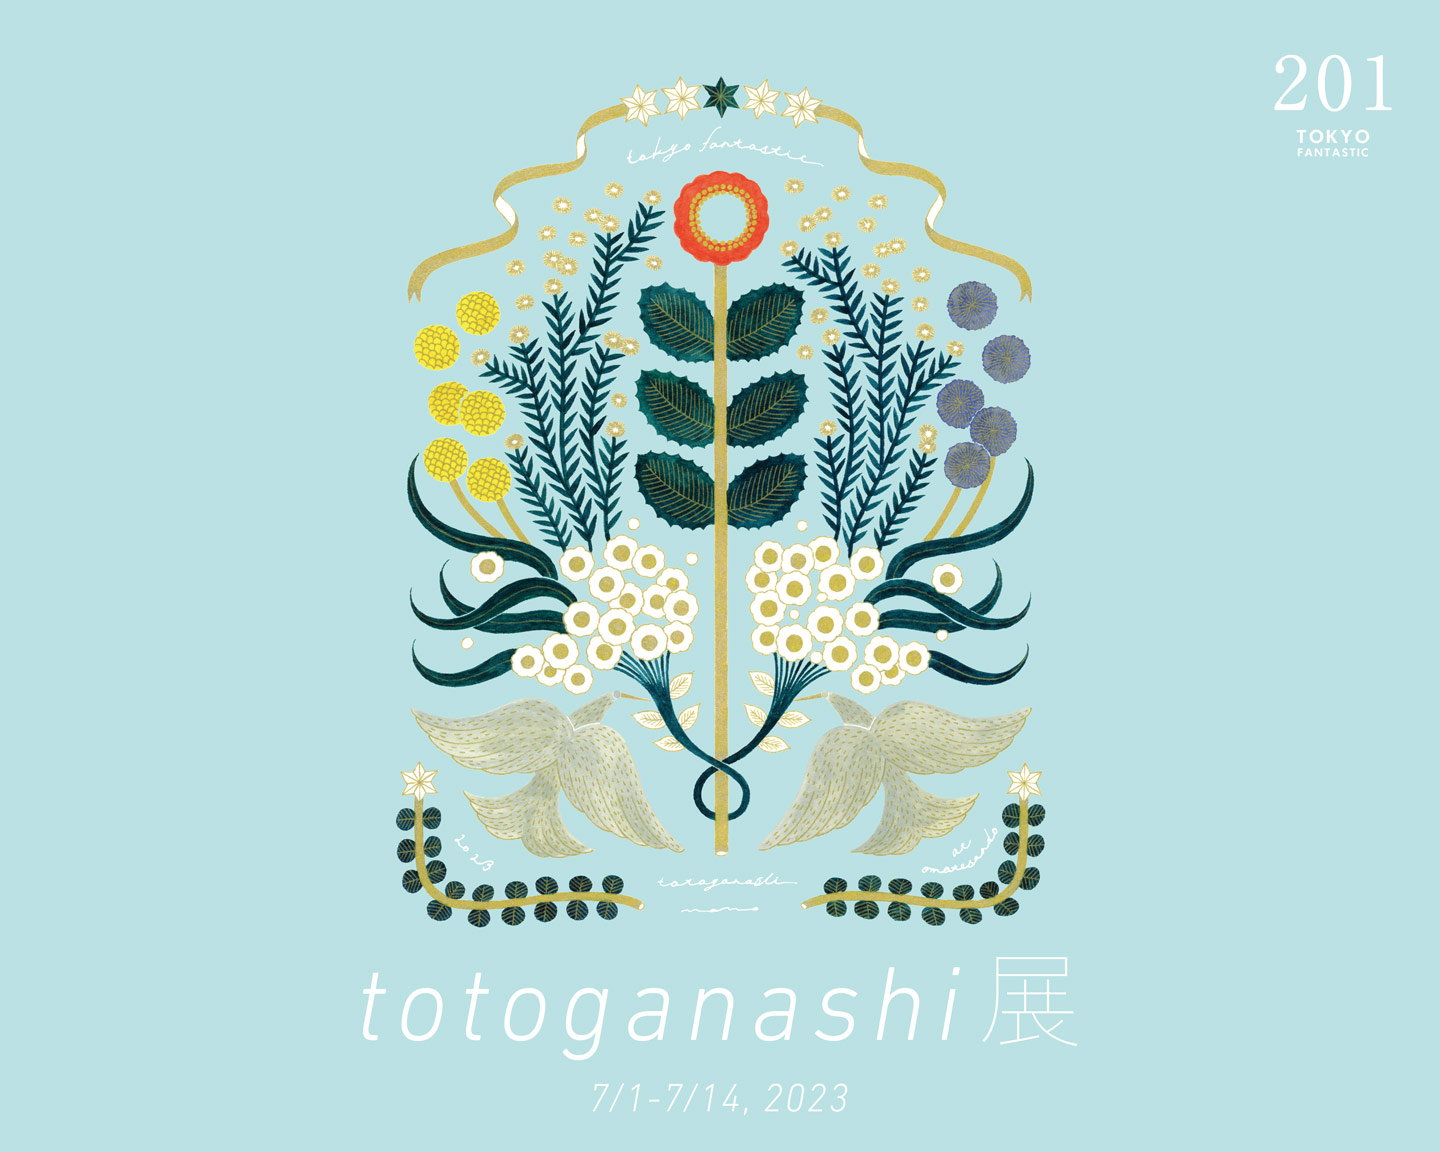 やさしい、お花のイラスト作家。totoganashi 展 7/1-7/14, 2023